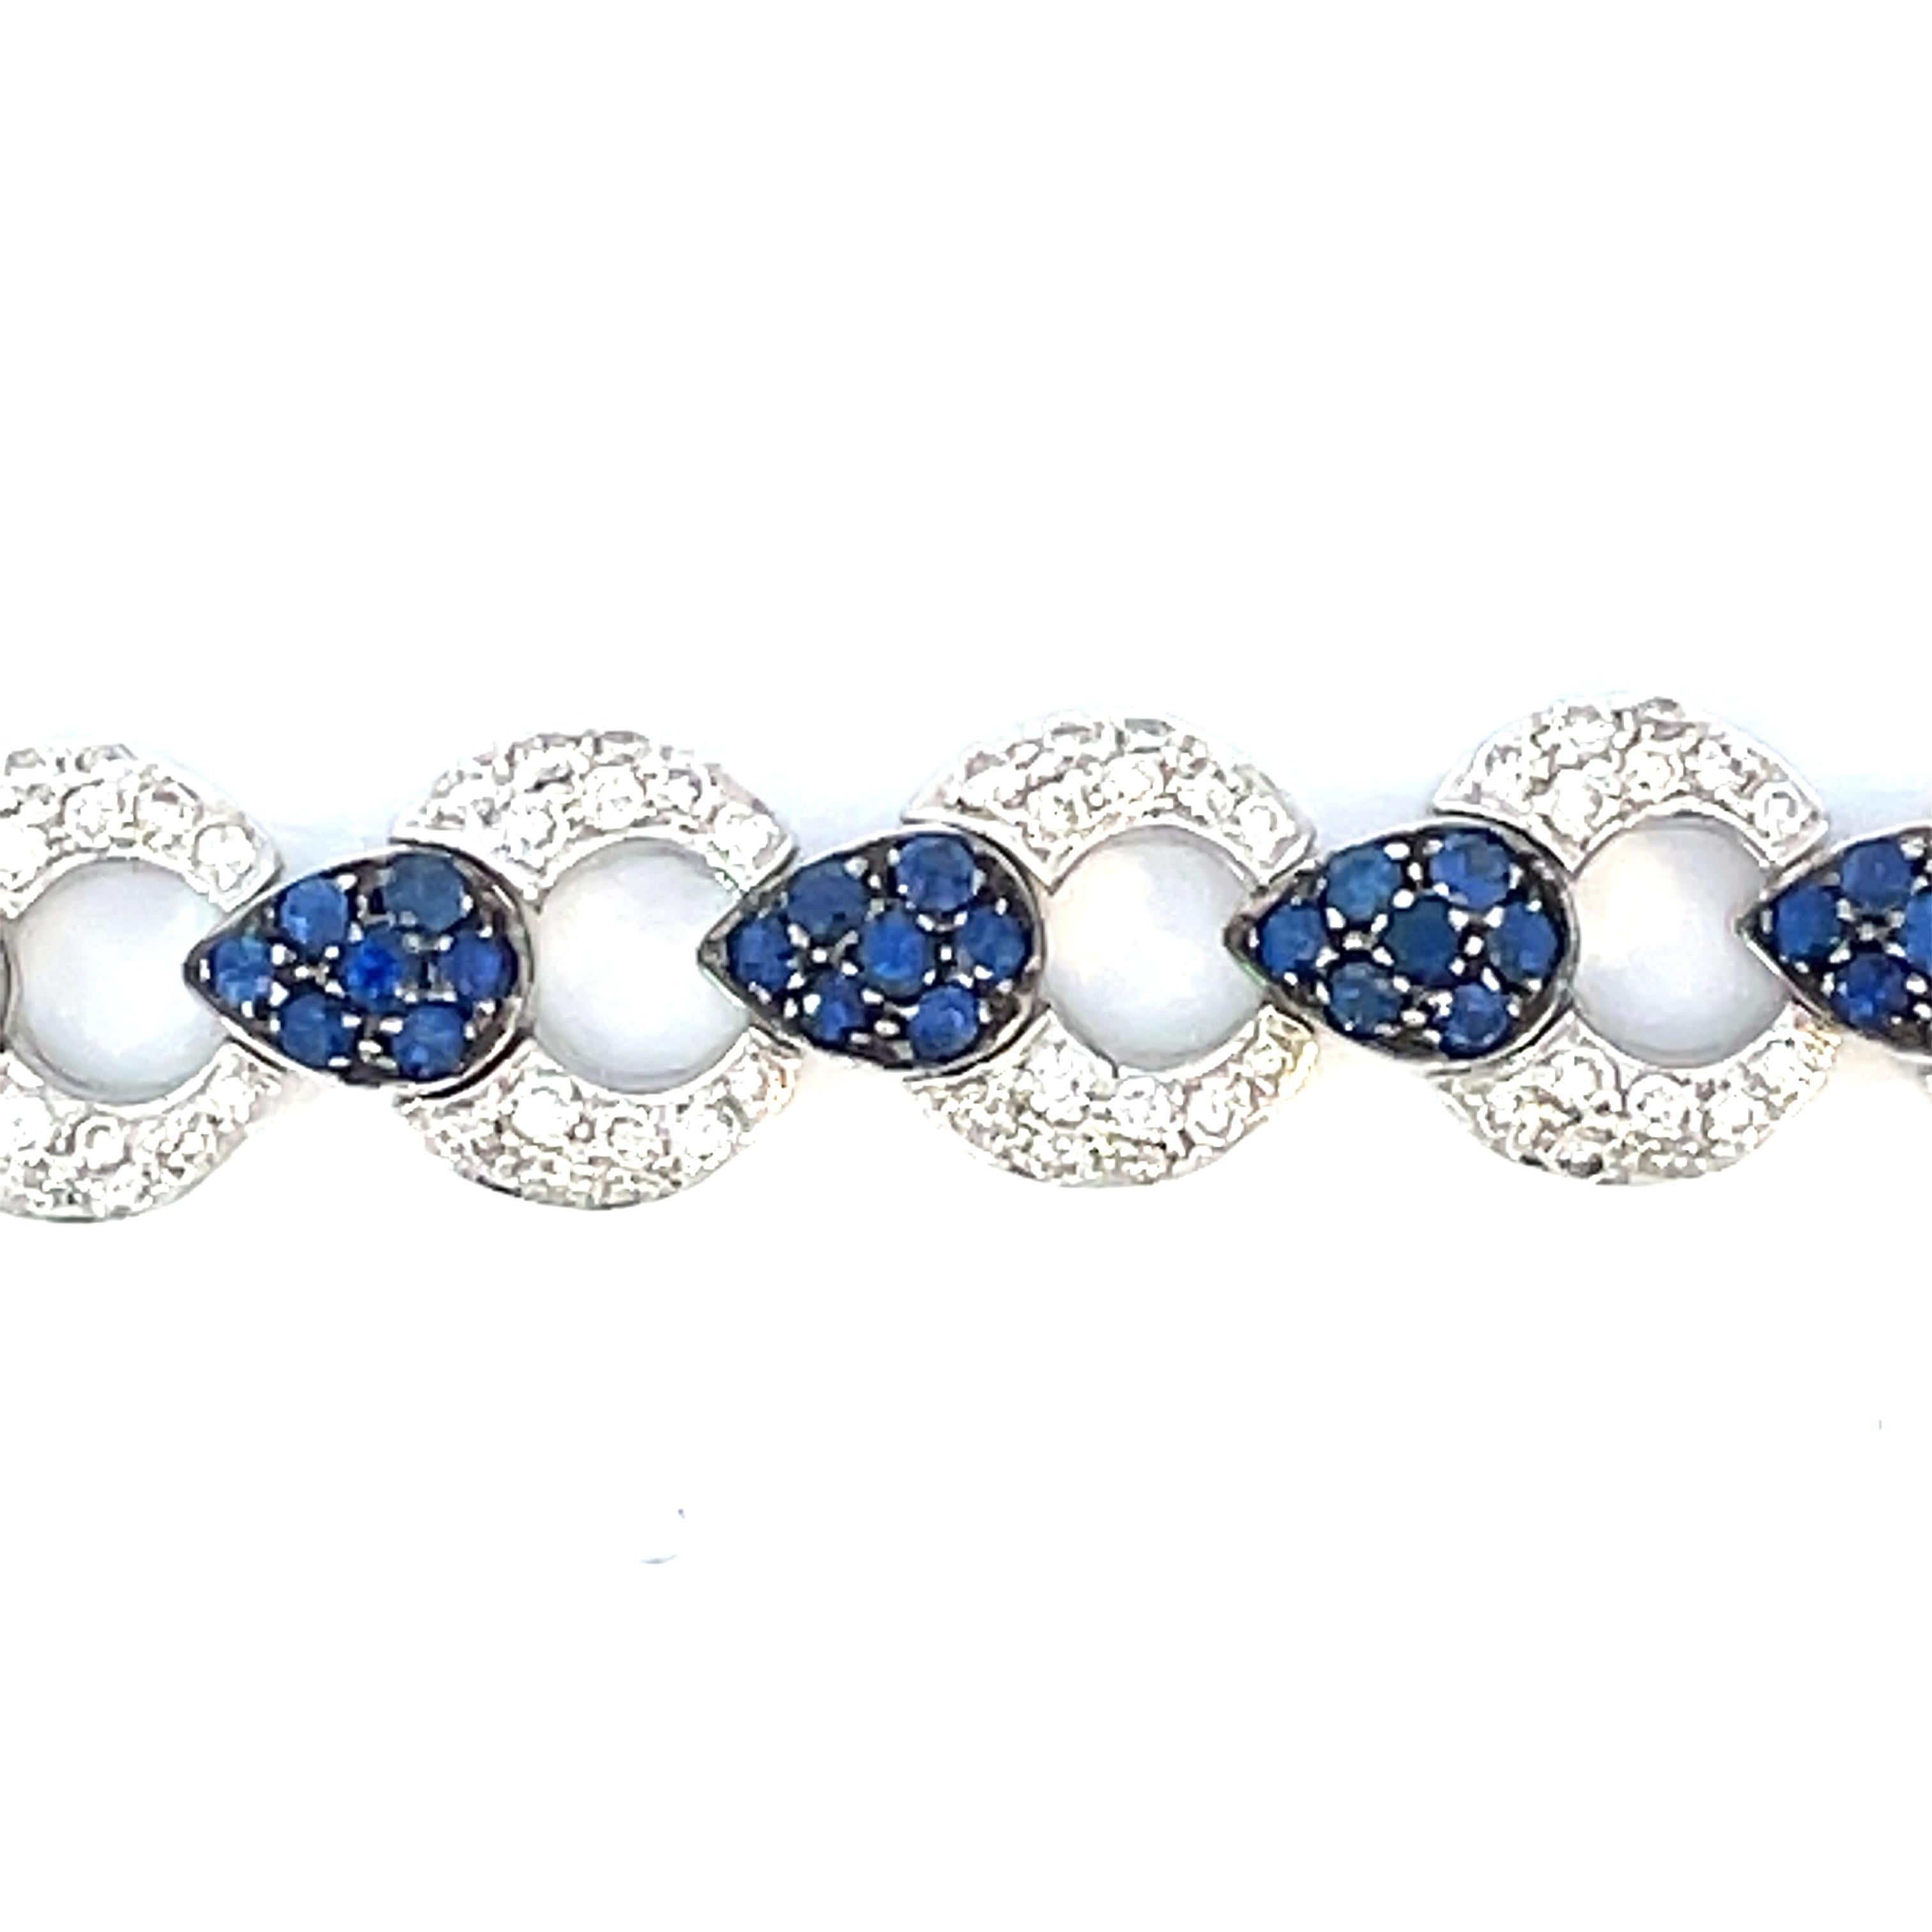 Ein elegantes Gliederarmband mit abwechselnd gepflasterten natürlichen weißen Diamanten und einem schwarzen Rhodium-Finish um die birnenförmigen Stationen aus natürlichem blauem Saphir in 18-karätigem Weißgold.

112 natürliche blaue Saphire mit